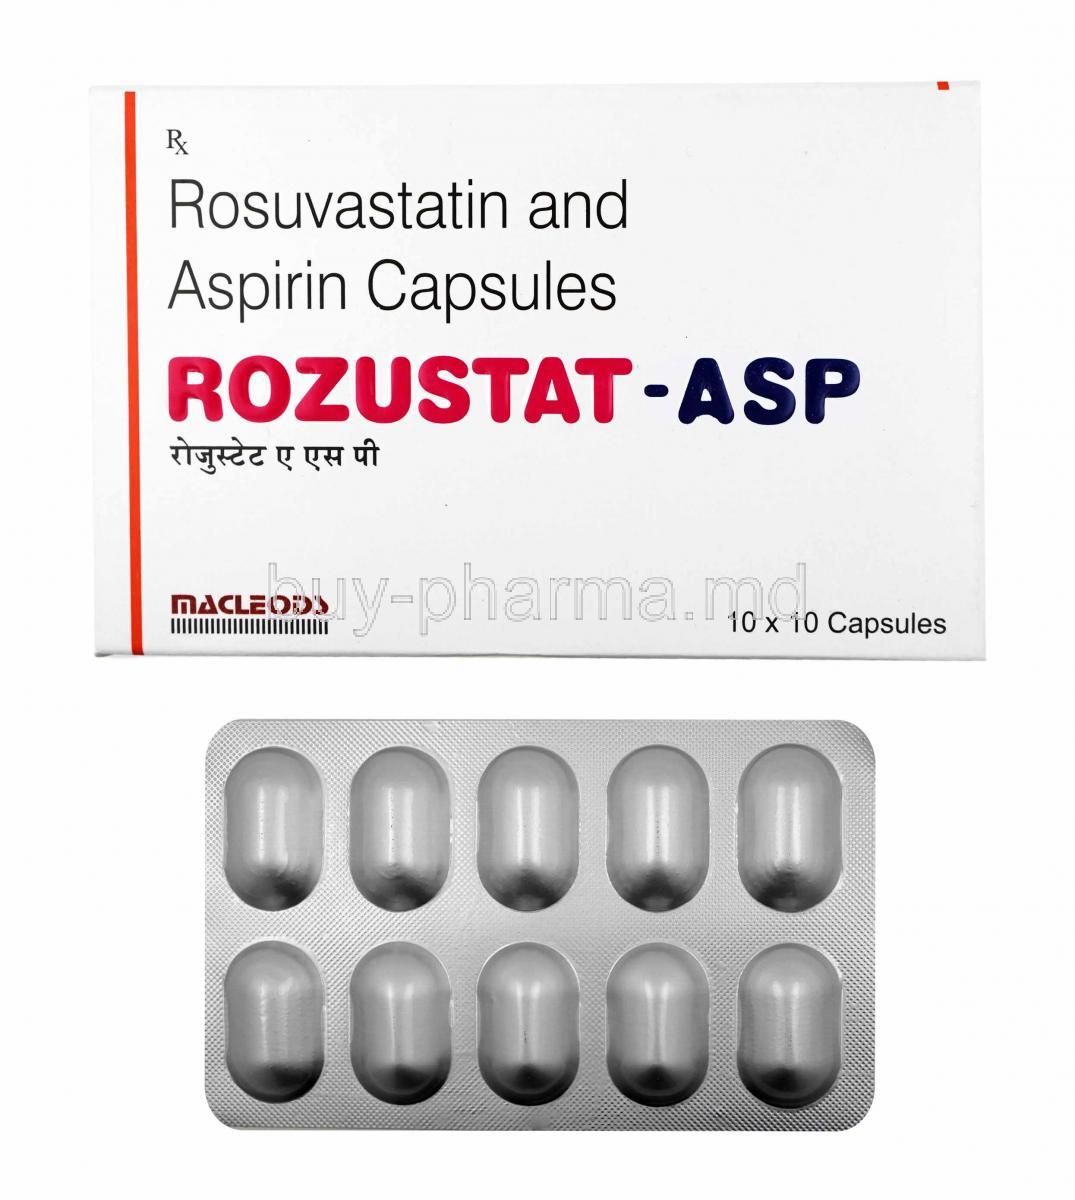 Rozustat-ASP, Rosuvastatin and Aspirin box and capsules